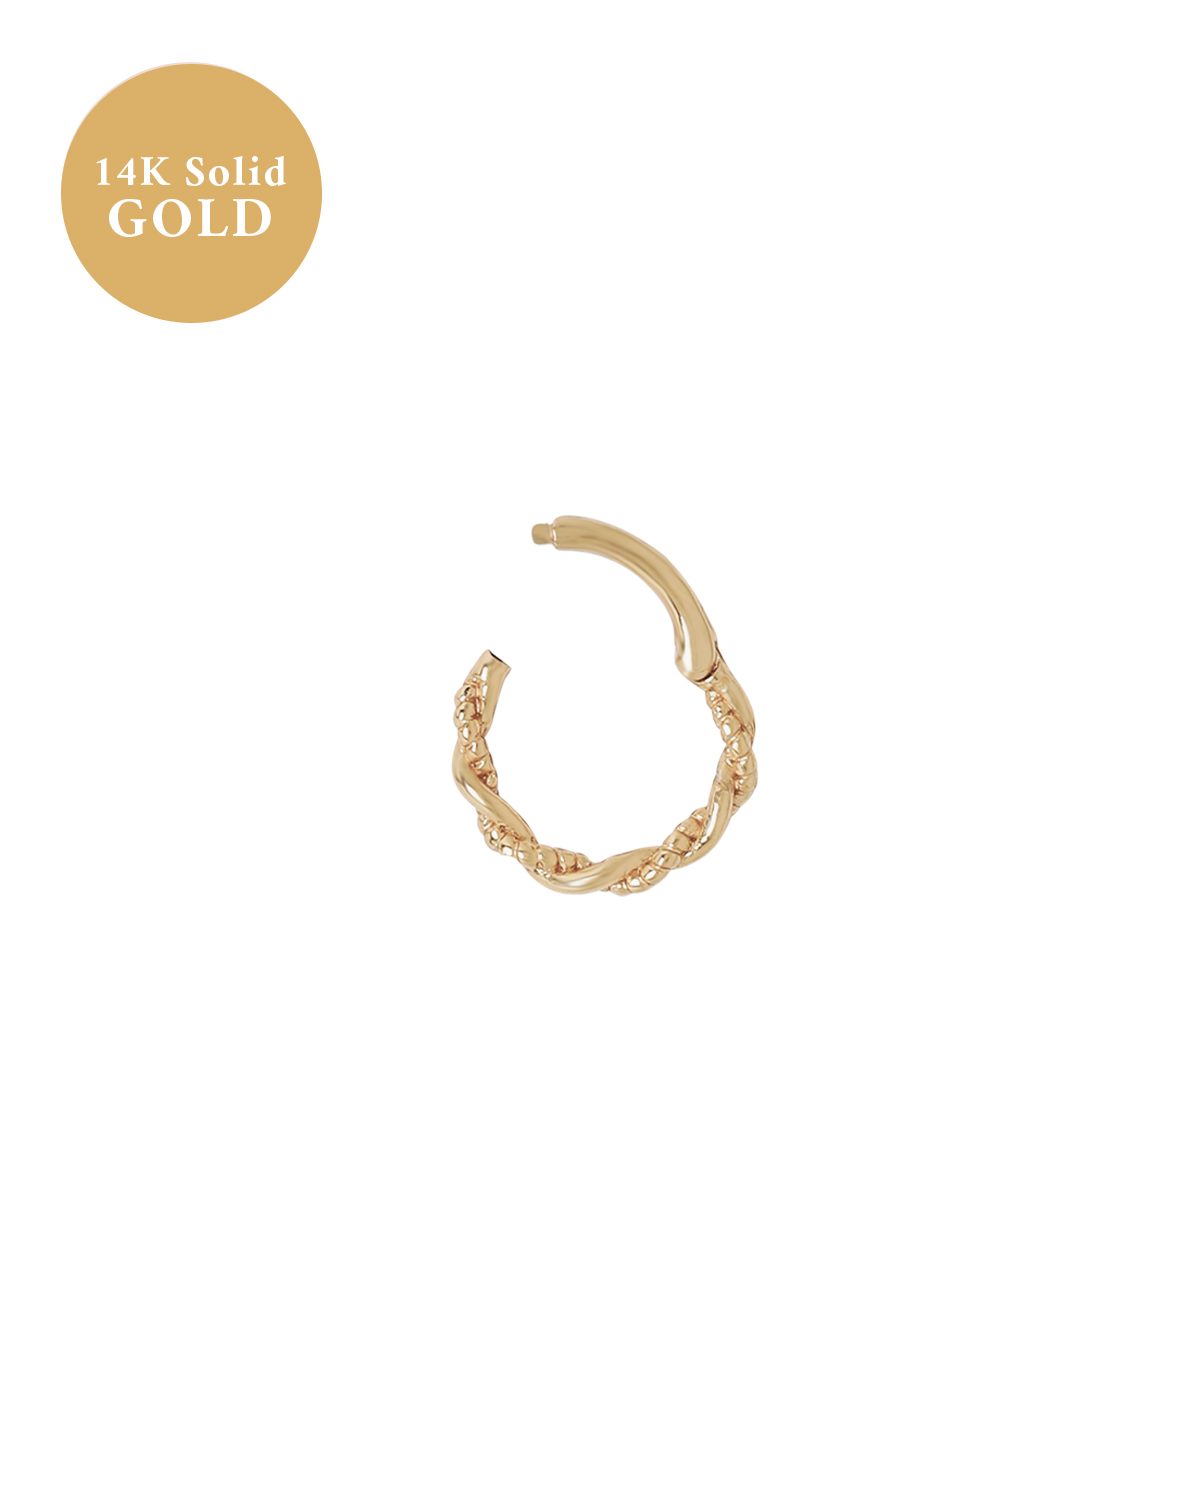 14K Solid Gold Merida Curled Hoop